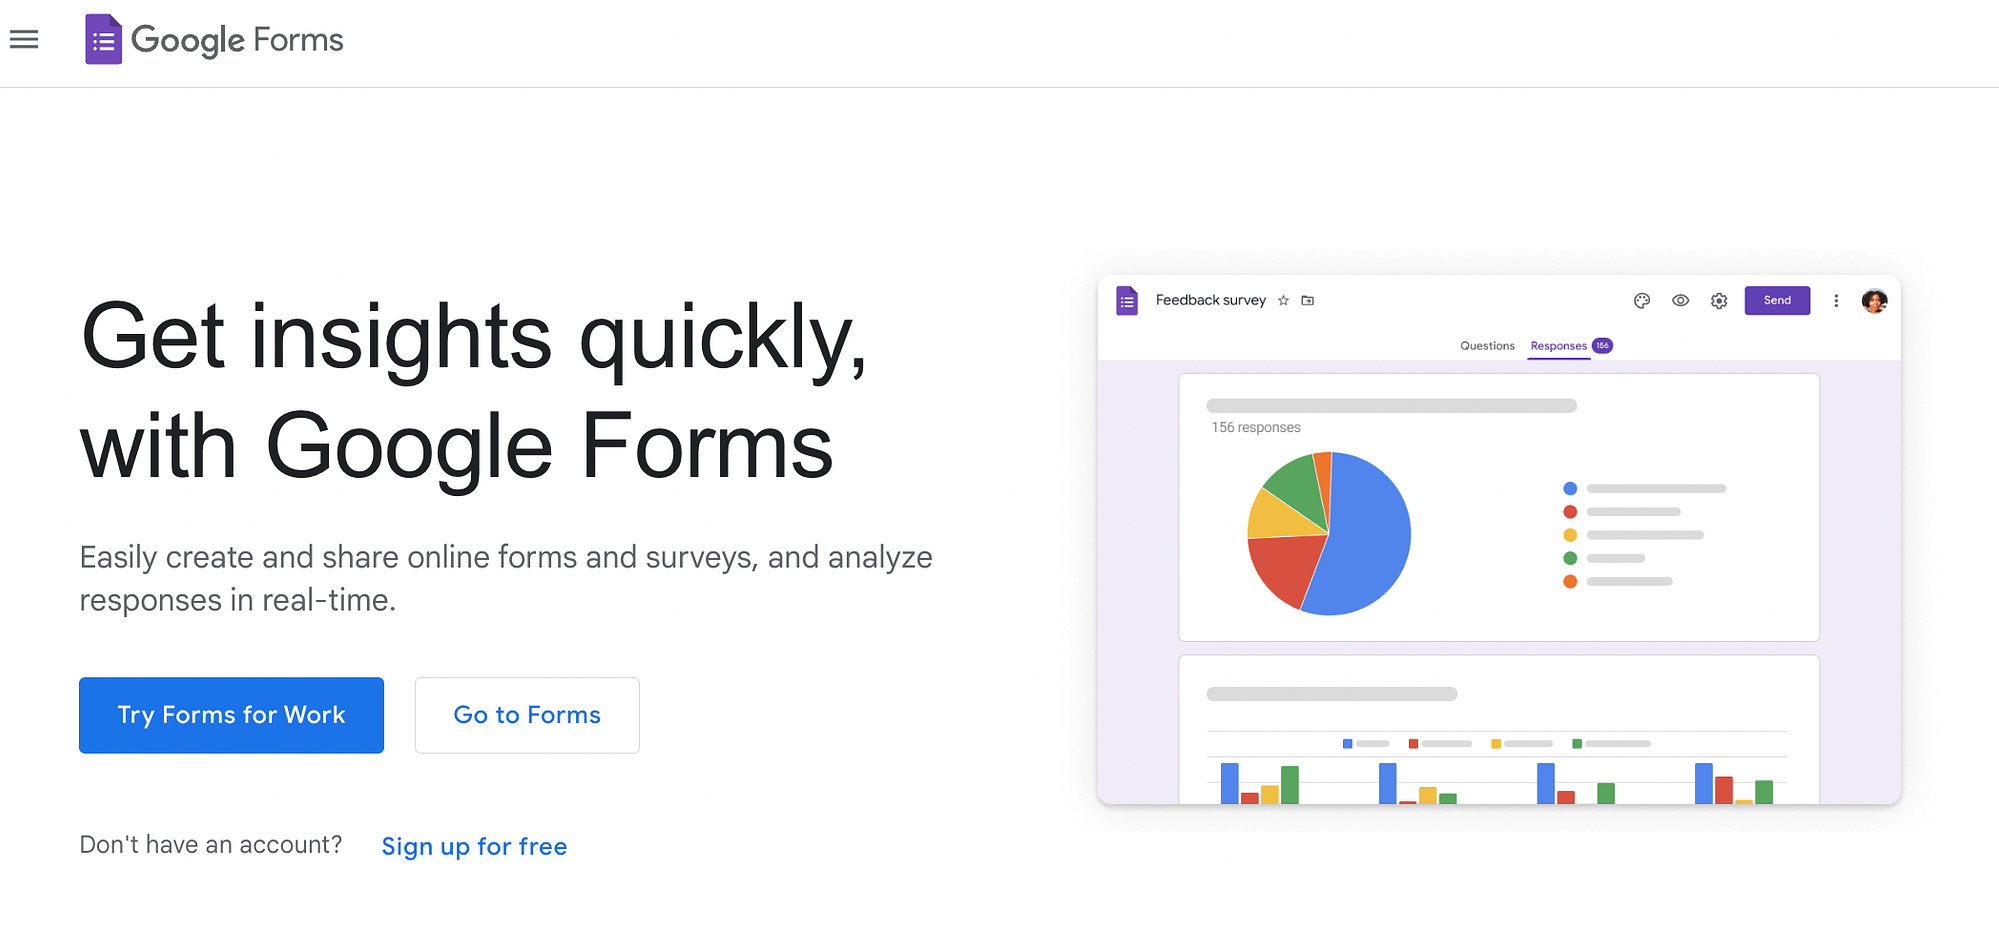 Se stai cercando strumenti di ricerca UX gratuiti, Google Forms è un'opzione eccellente.